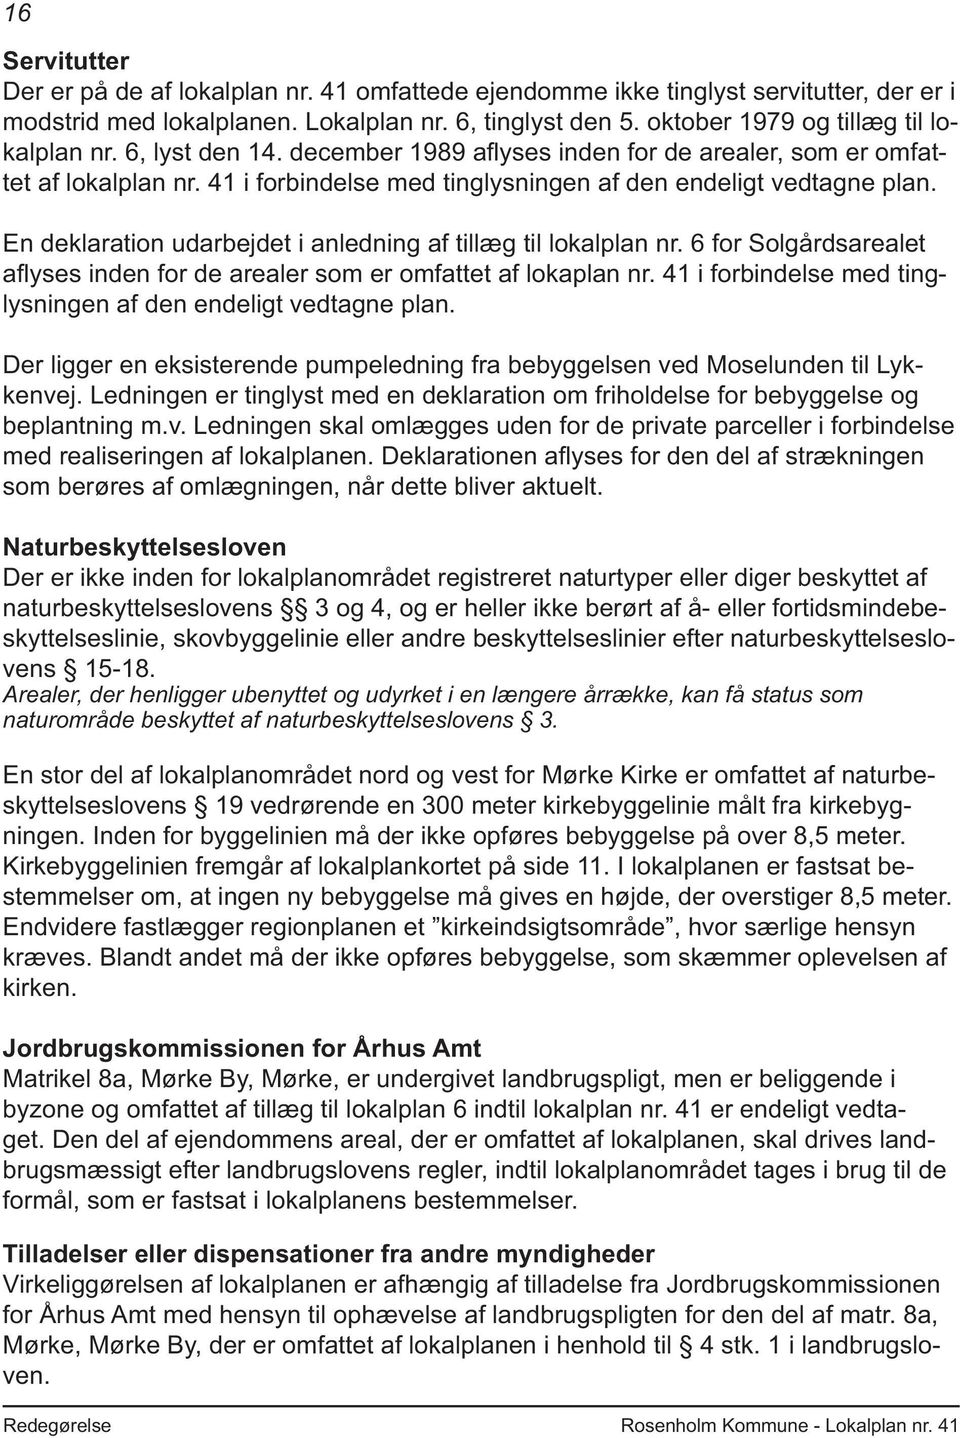 En deklaration udarbejdet i anledning af tillæg til lokalplan nr. 6 for Solgårdsarealet afl yses inden for de arealer som er omfattet af lokaplan nr.